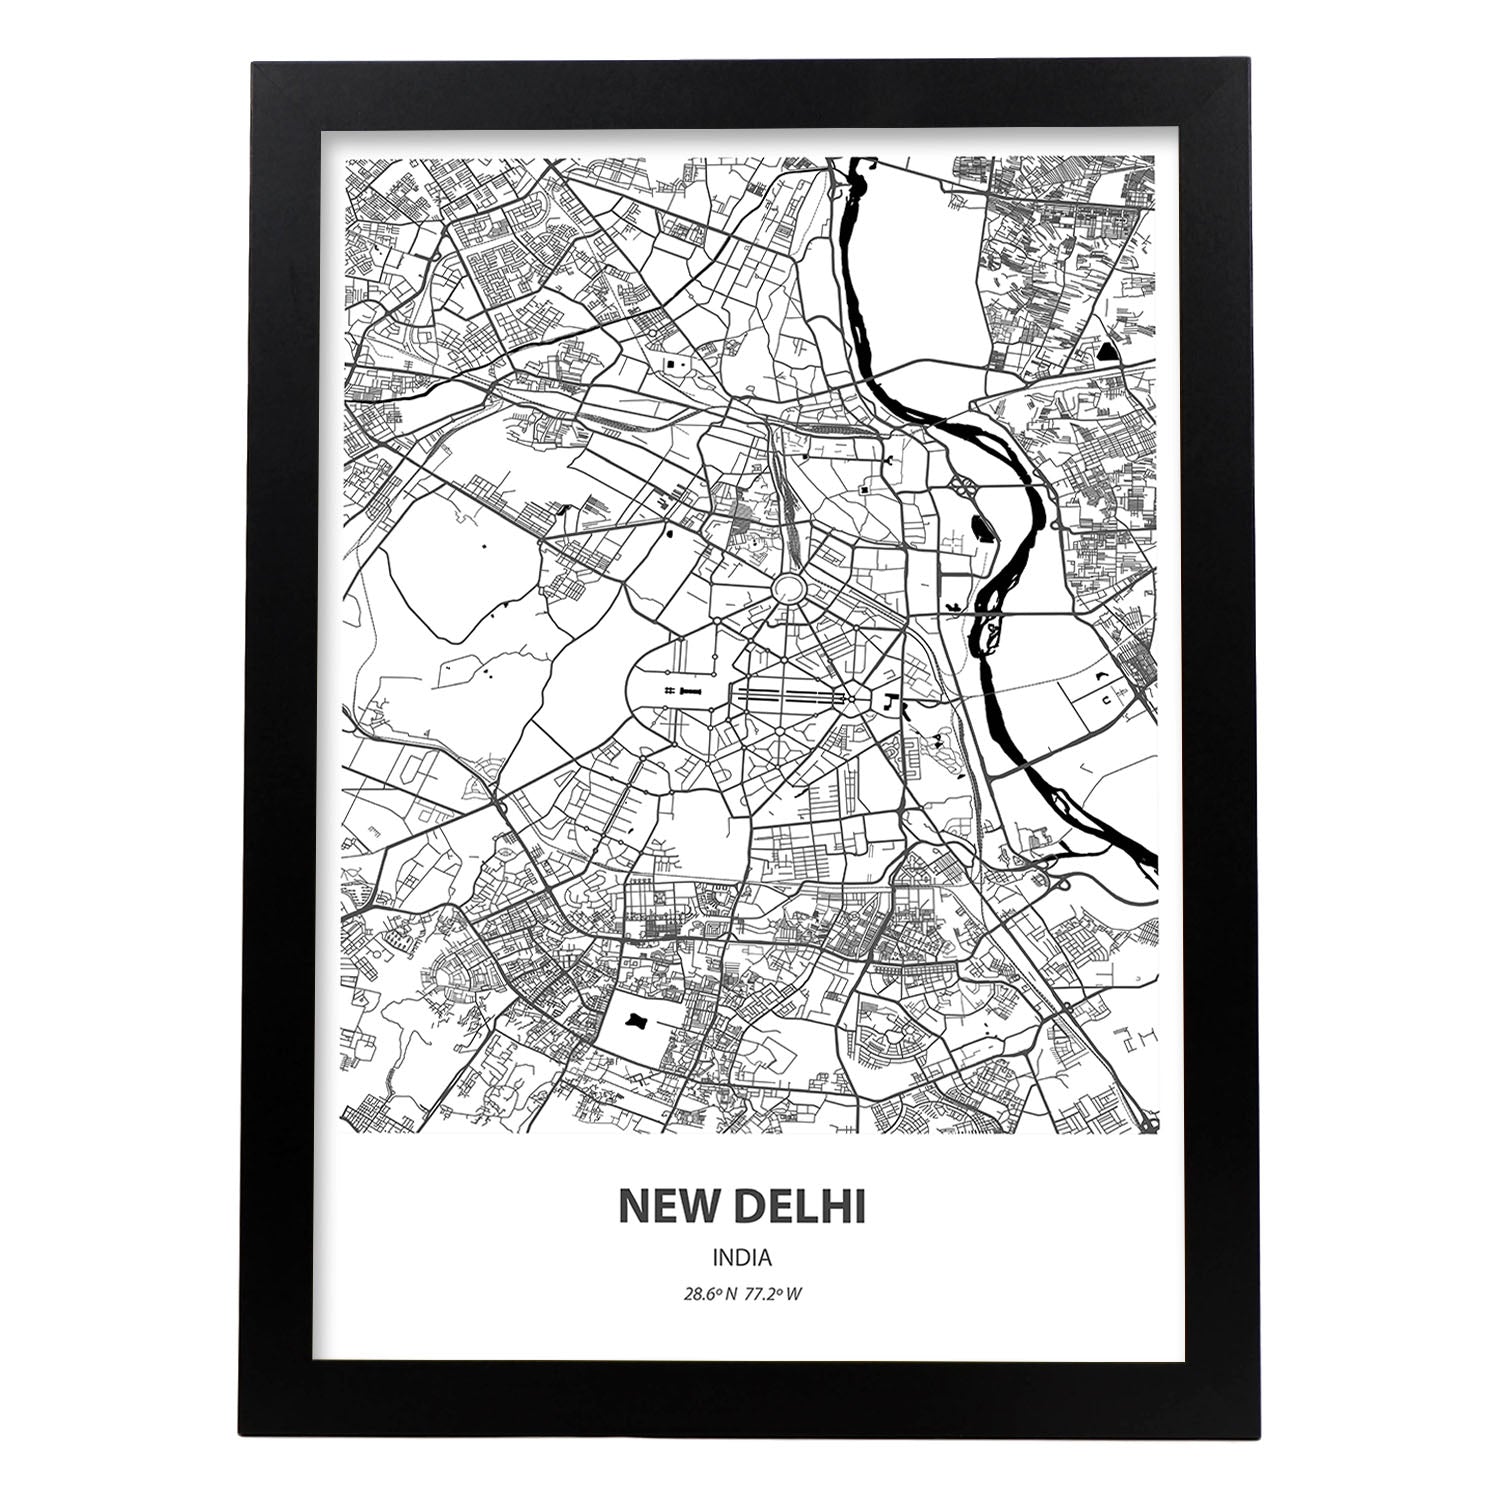 Poster con mapa de New Delhi - India. Láminas de ciudades de Asia con mares y ríos en color negro.-Artwork-Nacnic-A4-Marco Negro-Nacnic Estudio SL